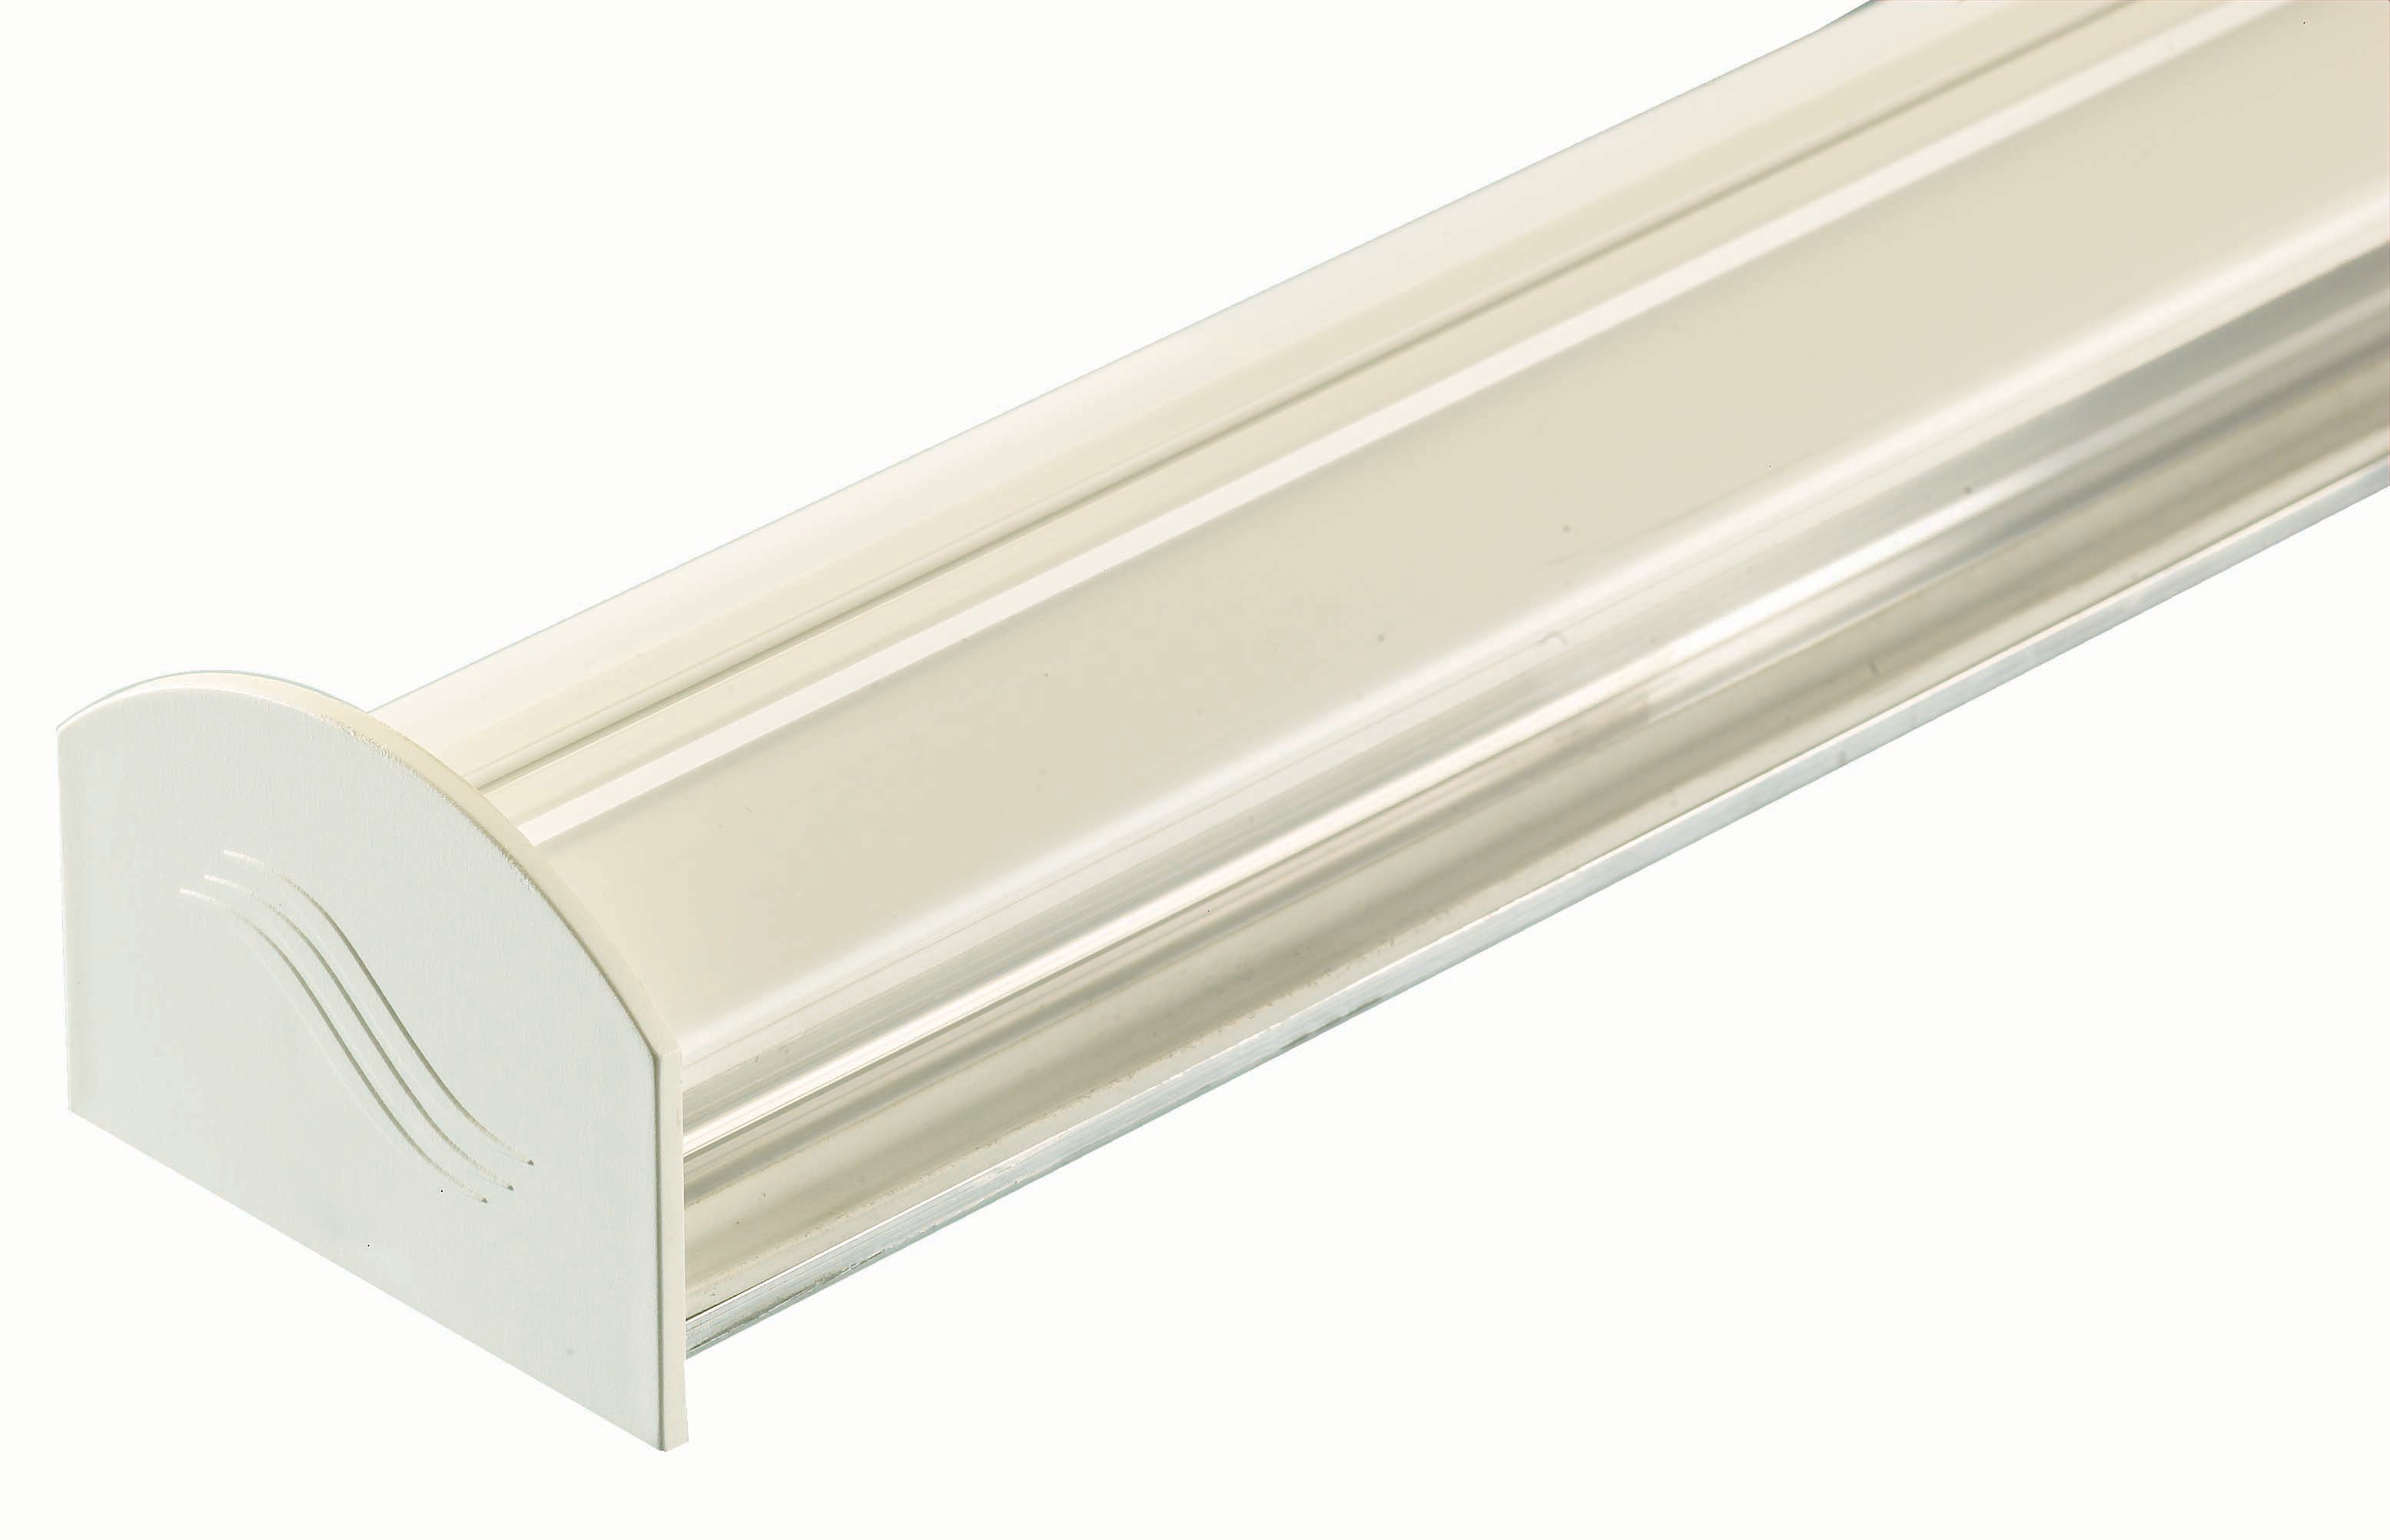 Image of Aluminium Glazing Bar Base and PVC Cap - White 6m